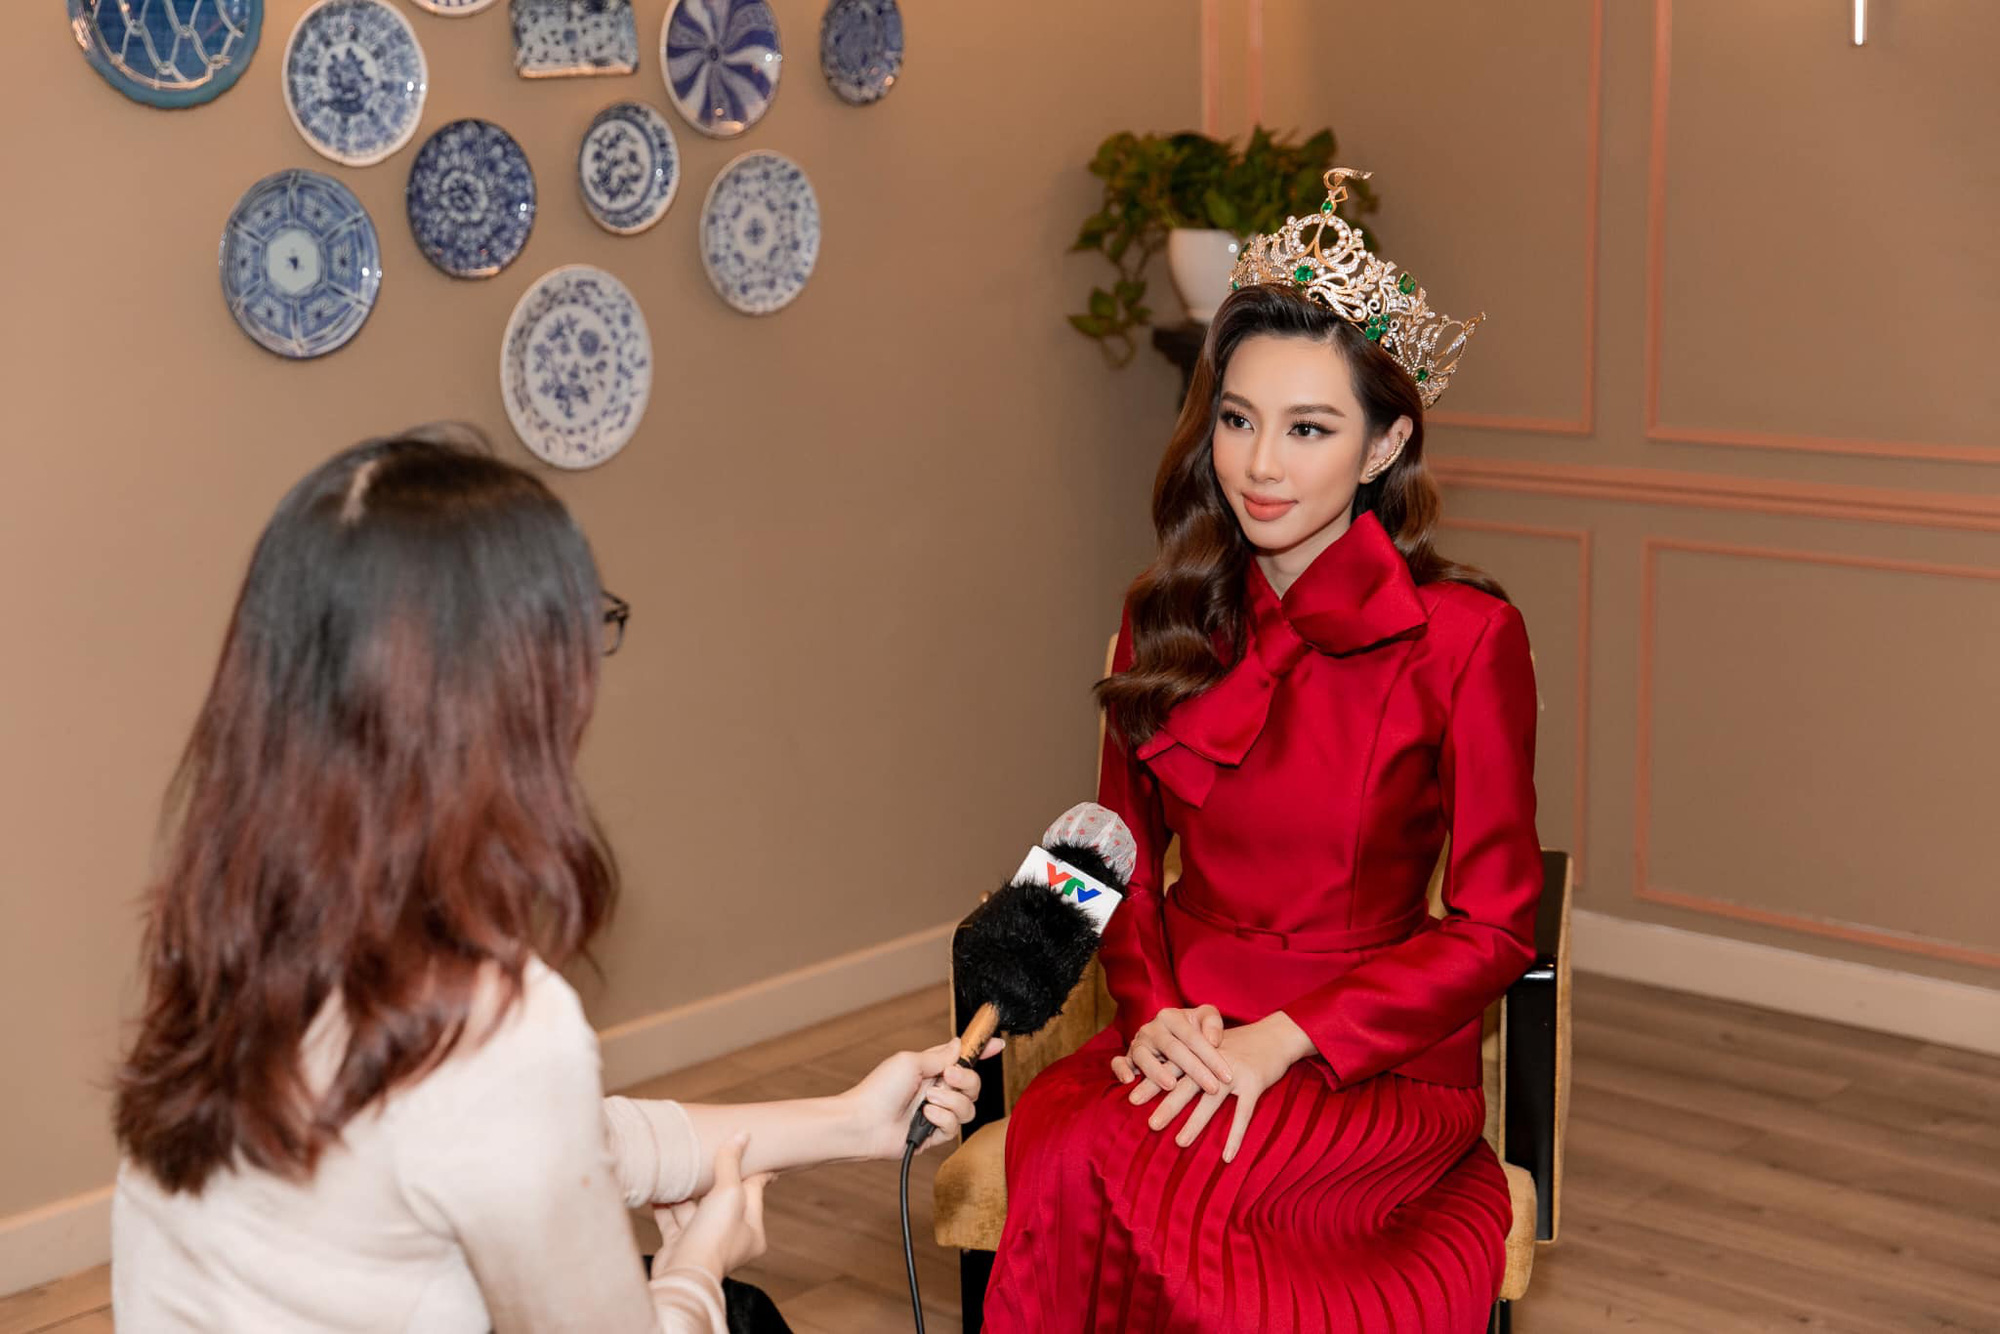 Không cần 'hở bạo' Hoa hậu Thùy Tiên vẫn cuốn hút nhờ thần thái 'sang chảnh' ngút ngàn, bộ trang phục được CĐM khen 'nức nở' - Ảnh 2